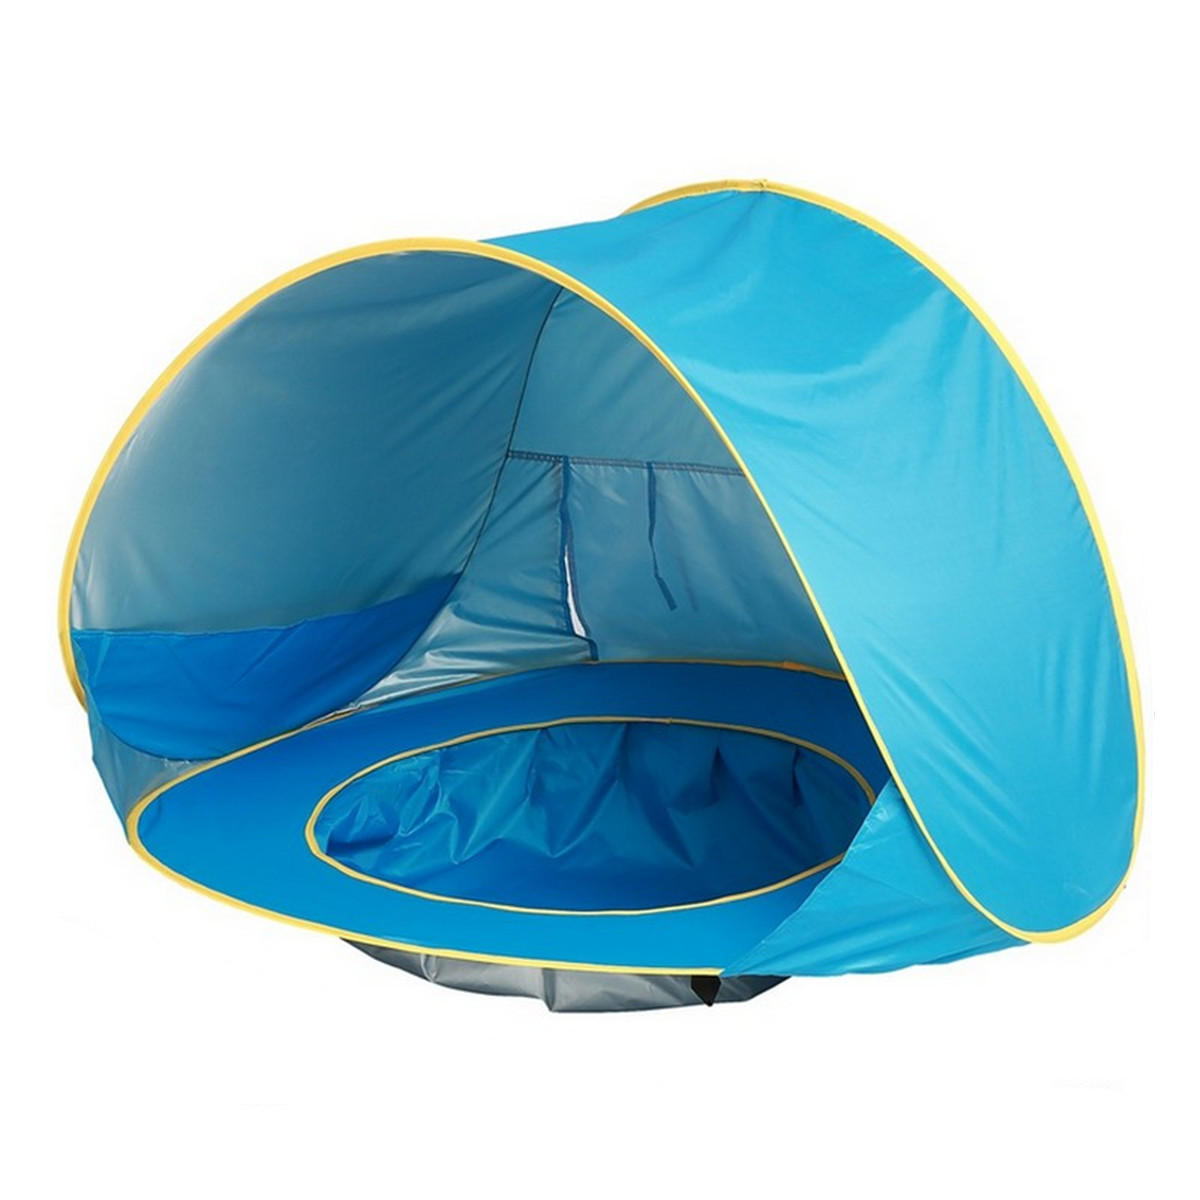 Tenda de praia para bebê com proteção UV e piscina, à prova d'água, fácil de montar, para acampar ao ar livre e se proteger do sol.